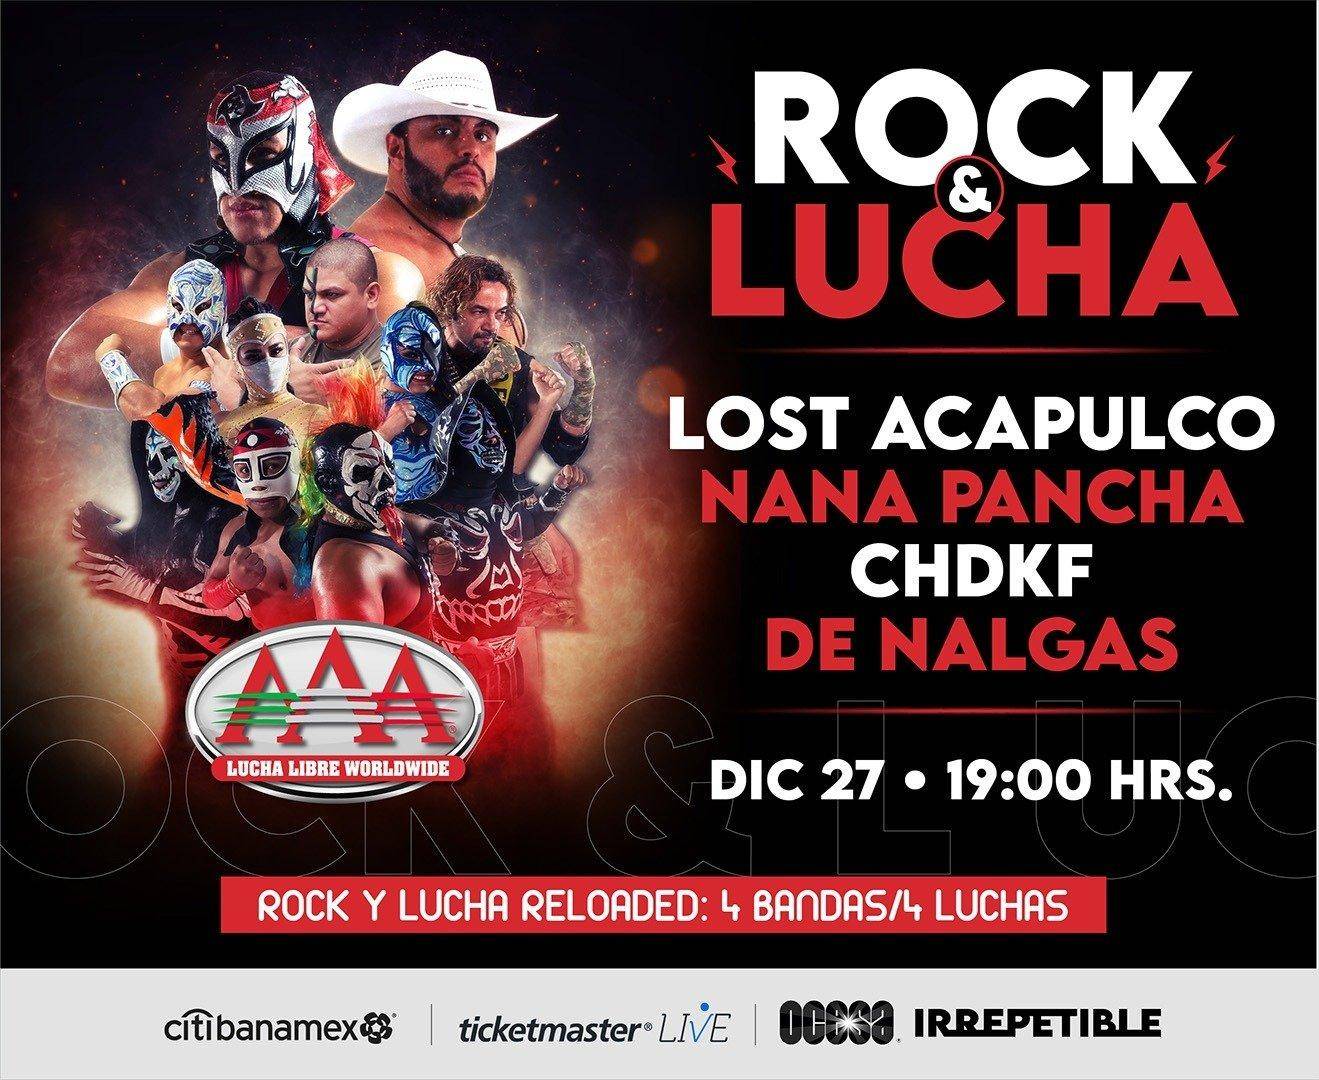 Rock y Luchas 2020, Chingadazos en la Arena. 3